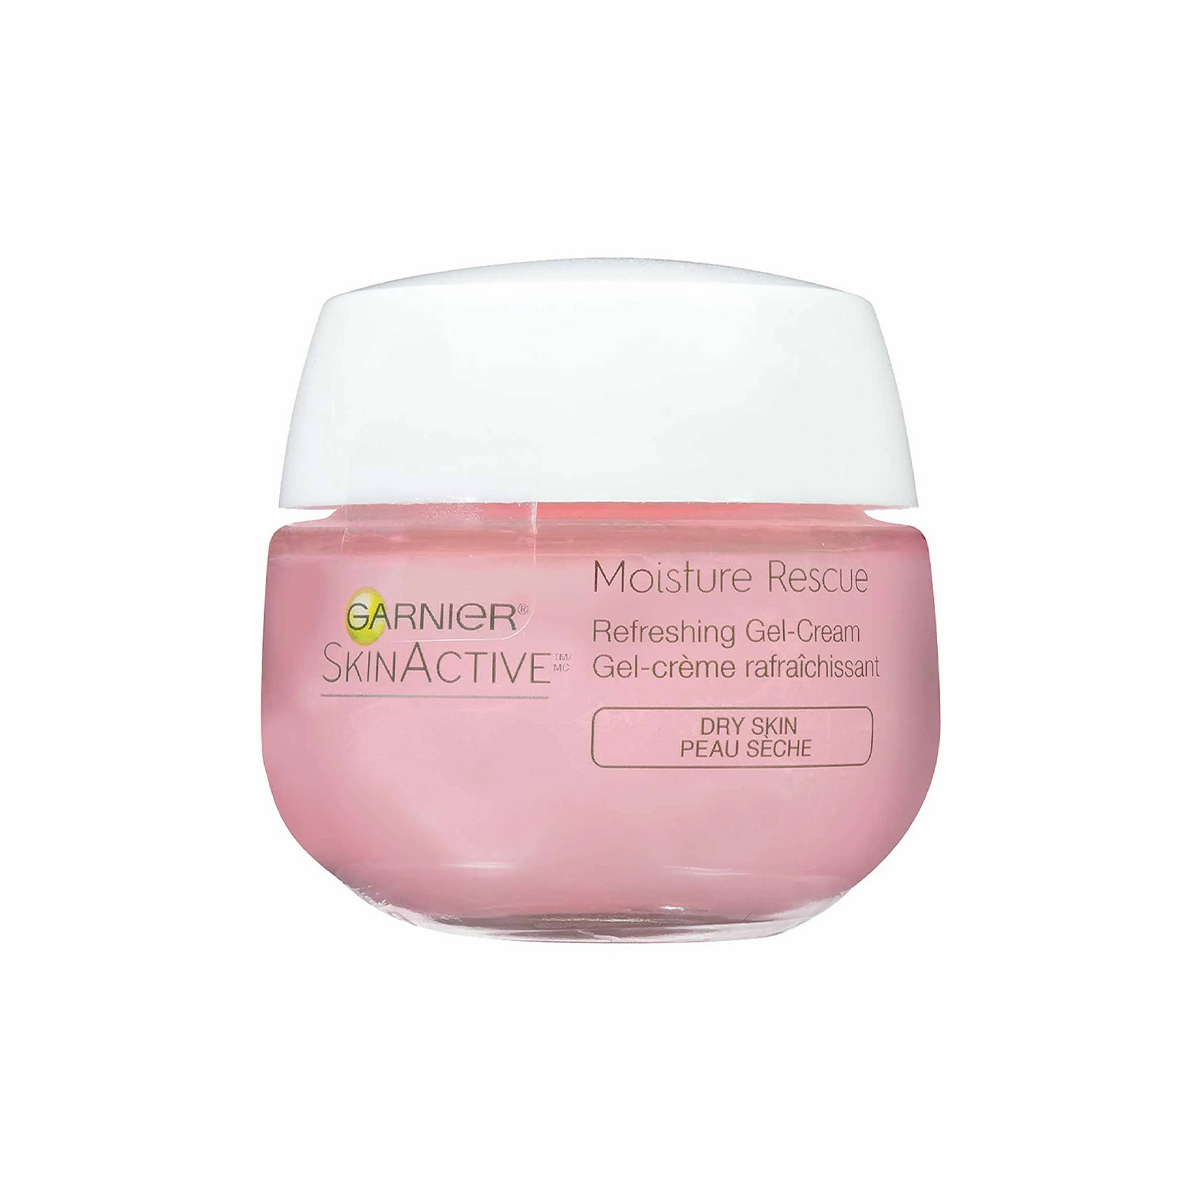 Garnier SkinActive Moisture Rescue Refreshing Gel-Cream for Dry Skin